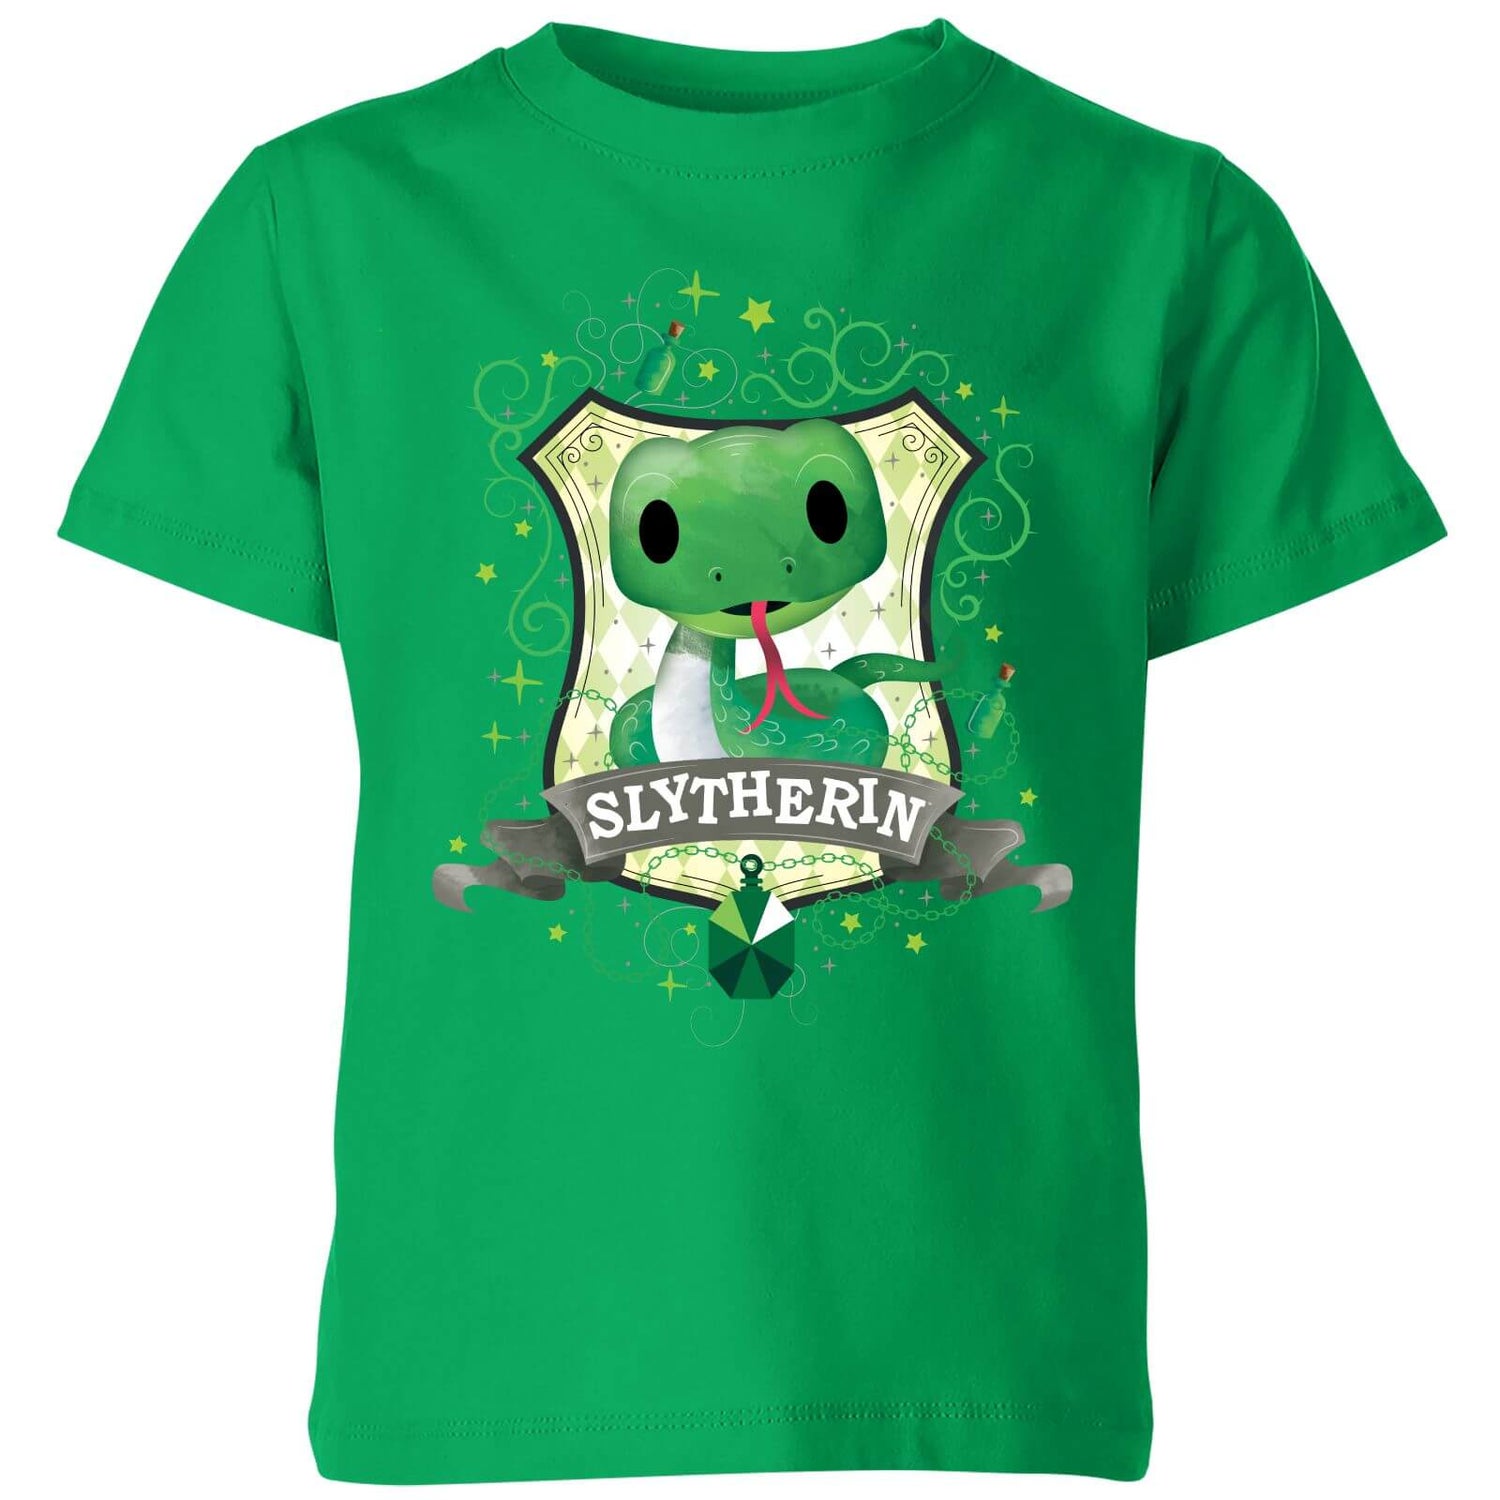 Camiseta para niños Slytherin de Harry Potter - Verde kelly